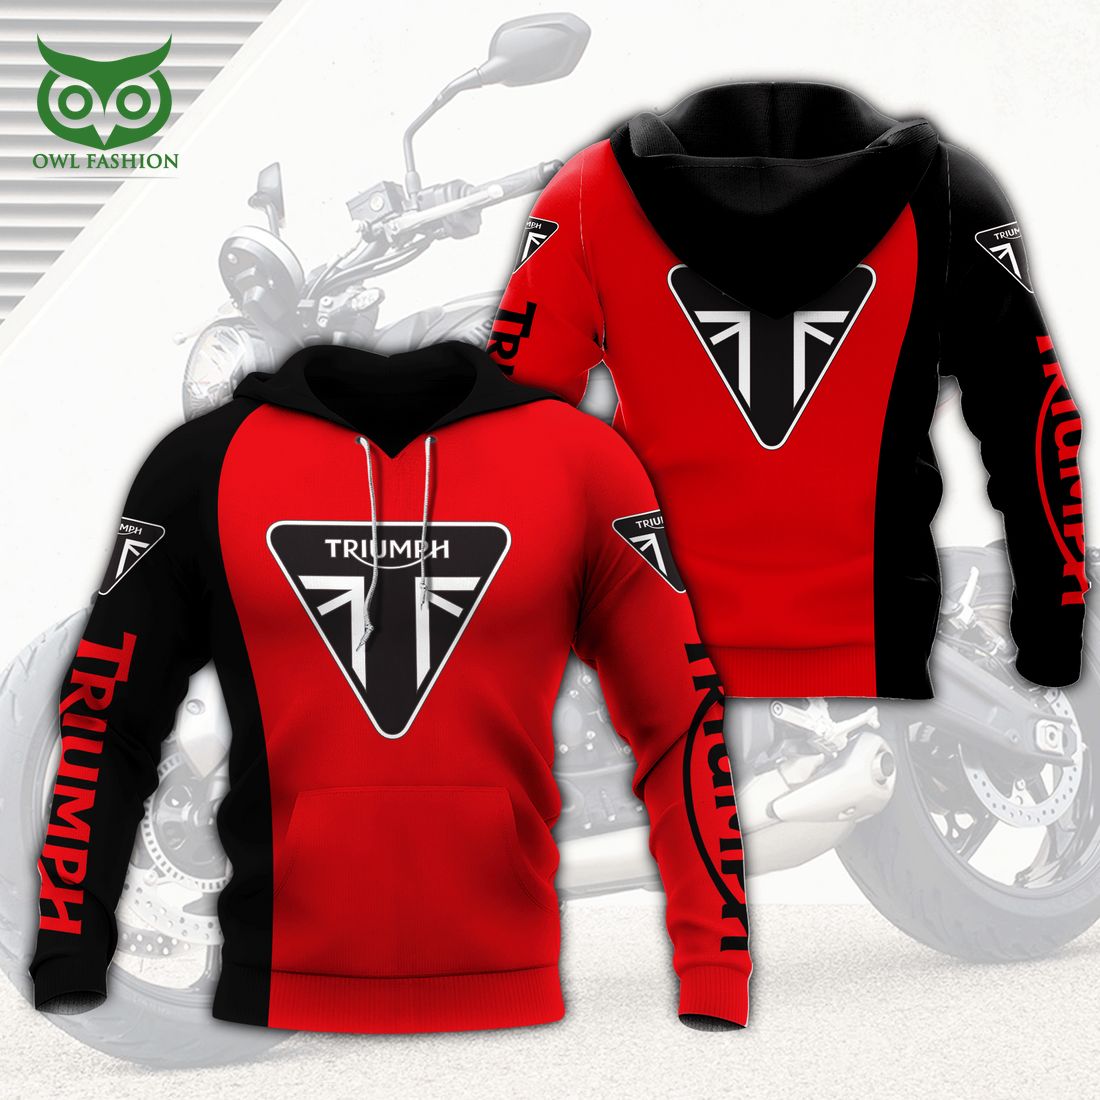 triumph motorcycles red and black 3d shirt 1 uTQ3b